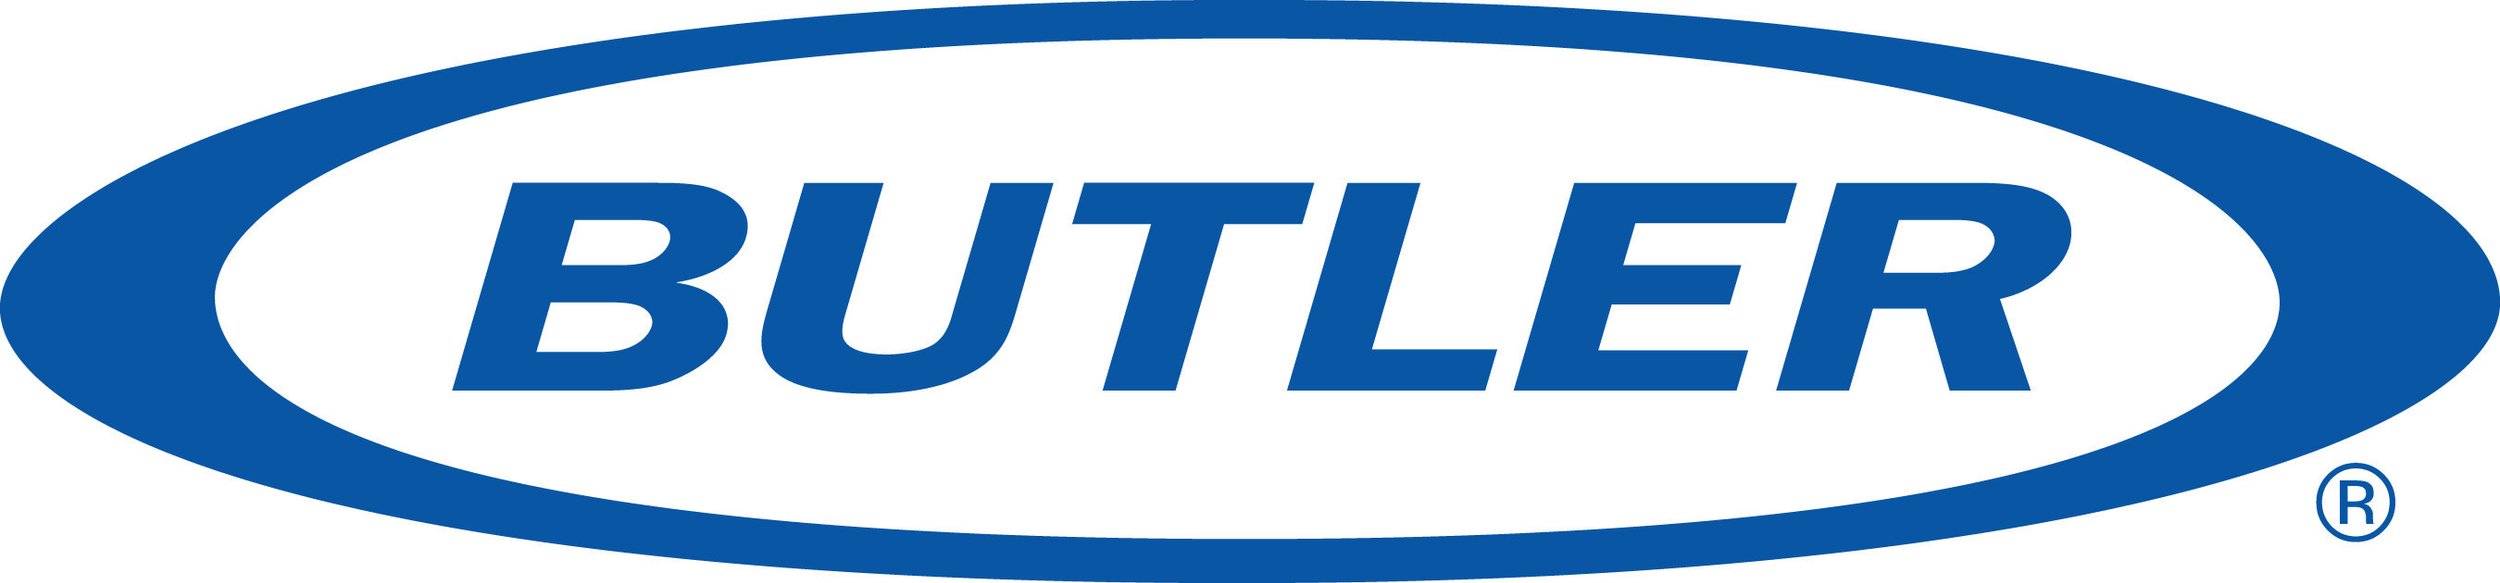 Butler_Manufacturing_Logo.jpg